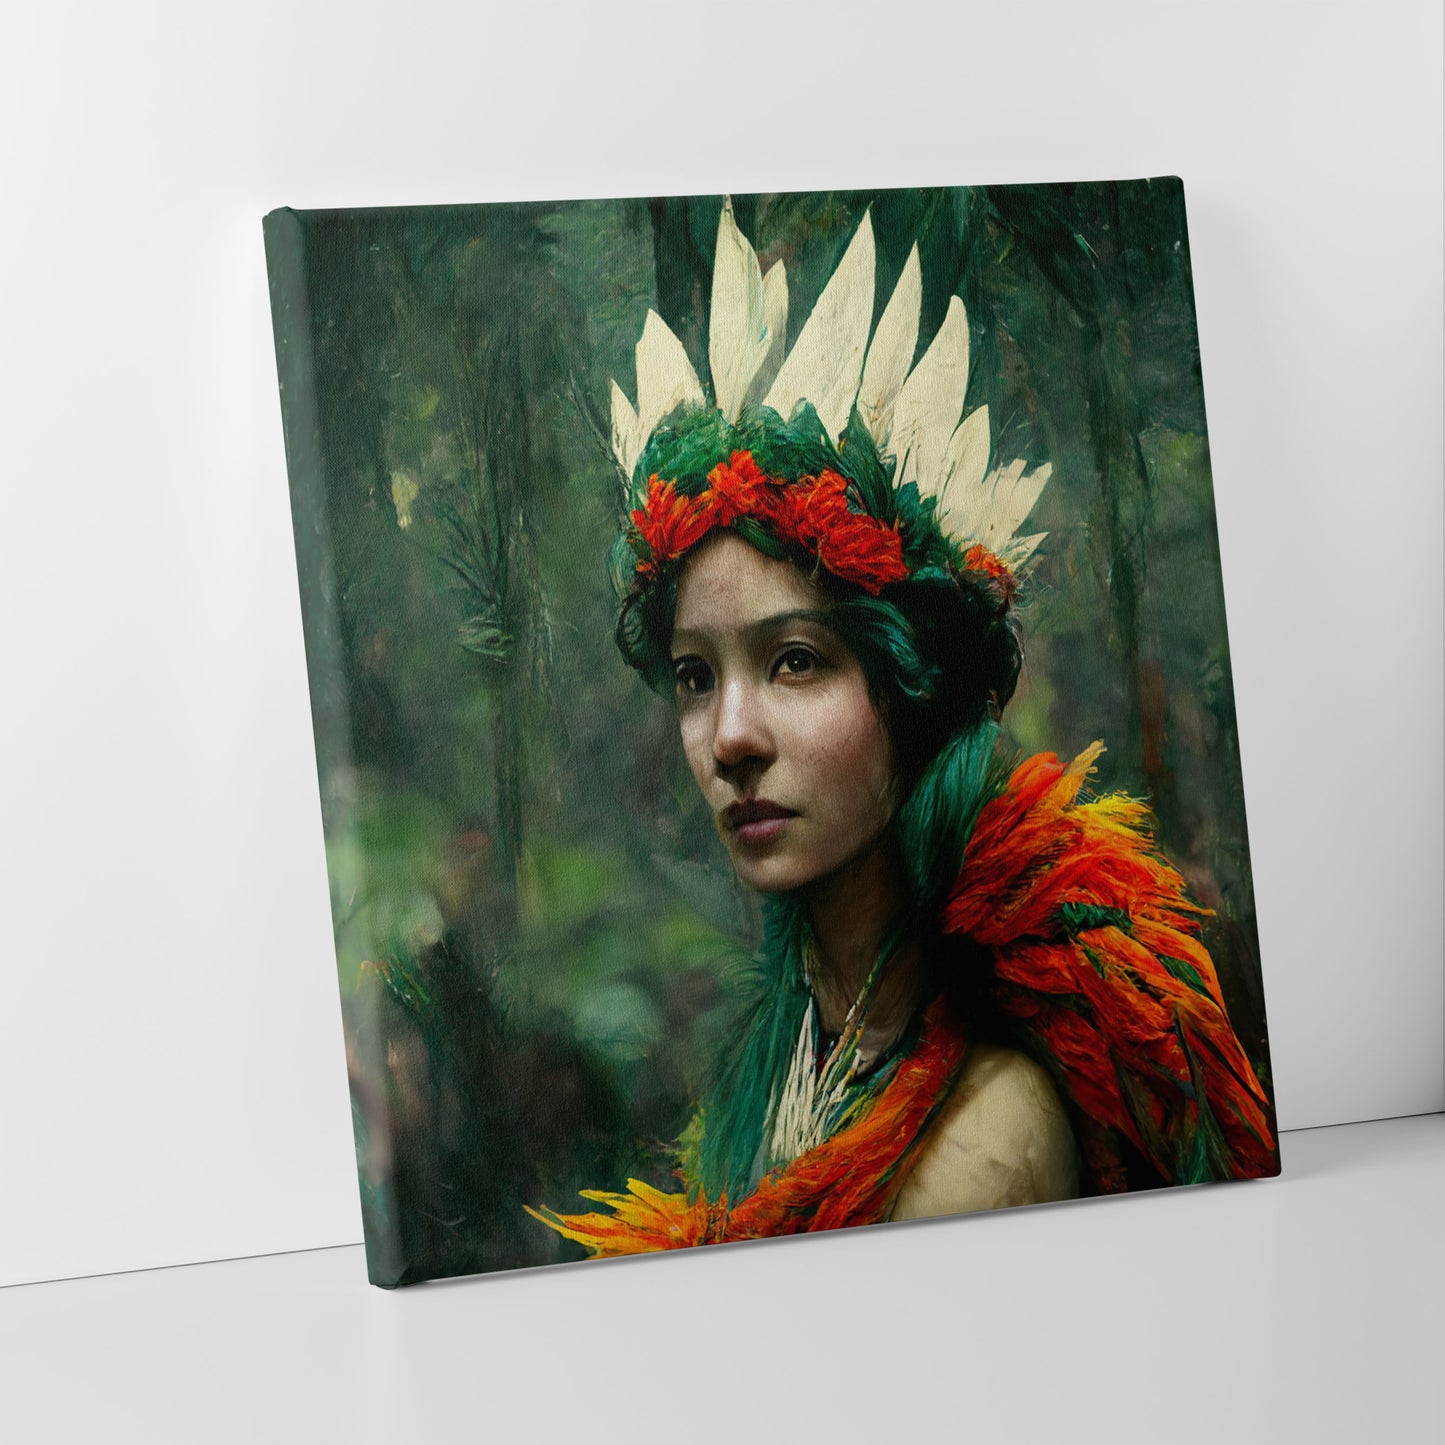 Women in quetzal feathers